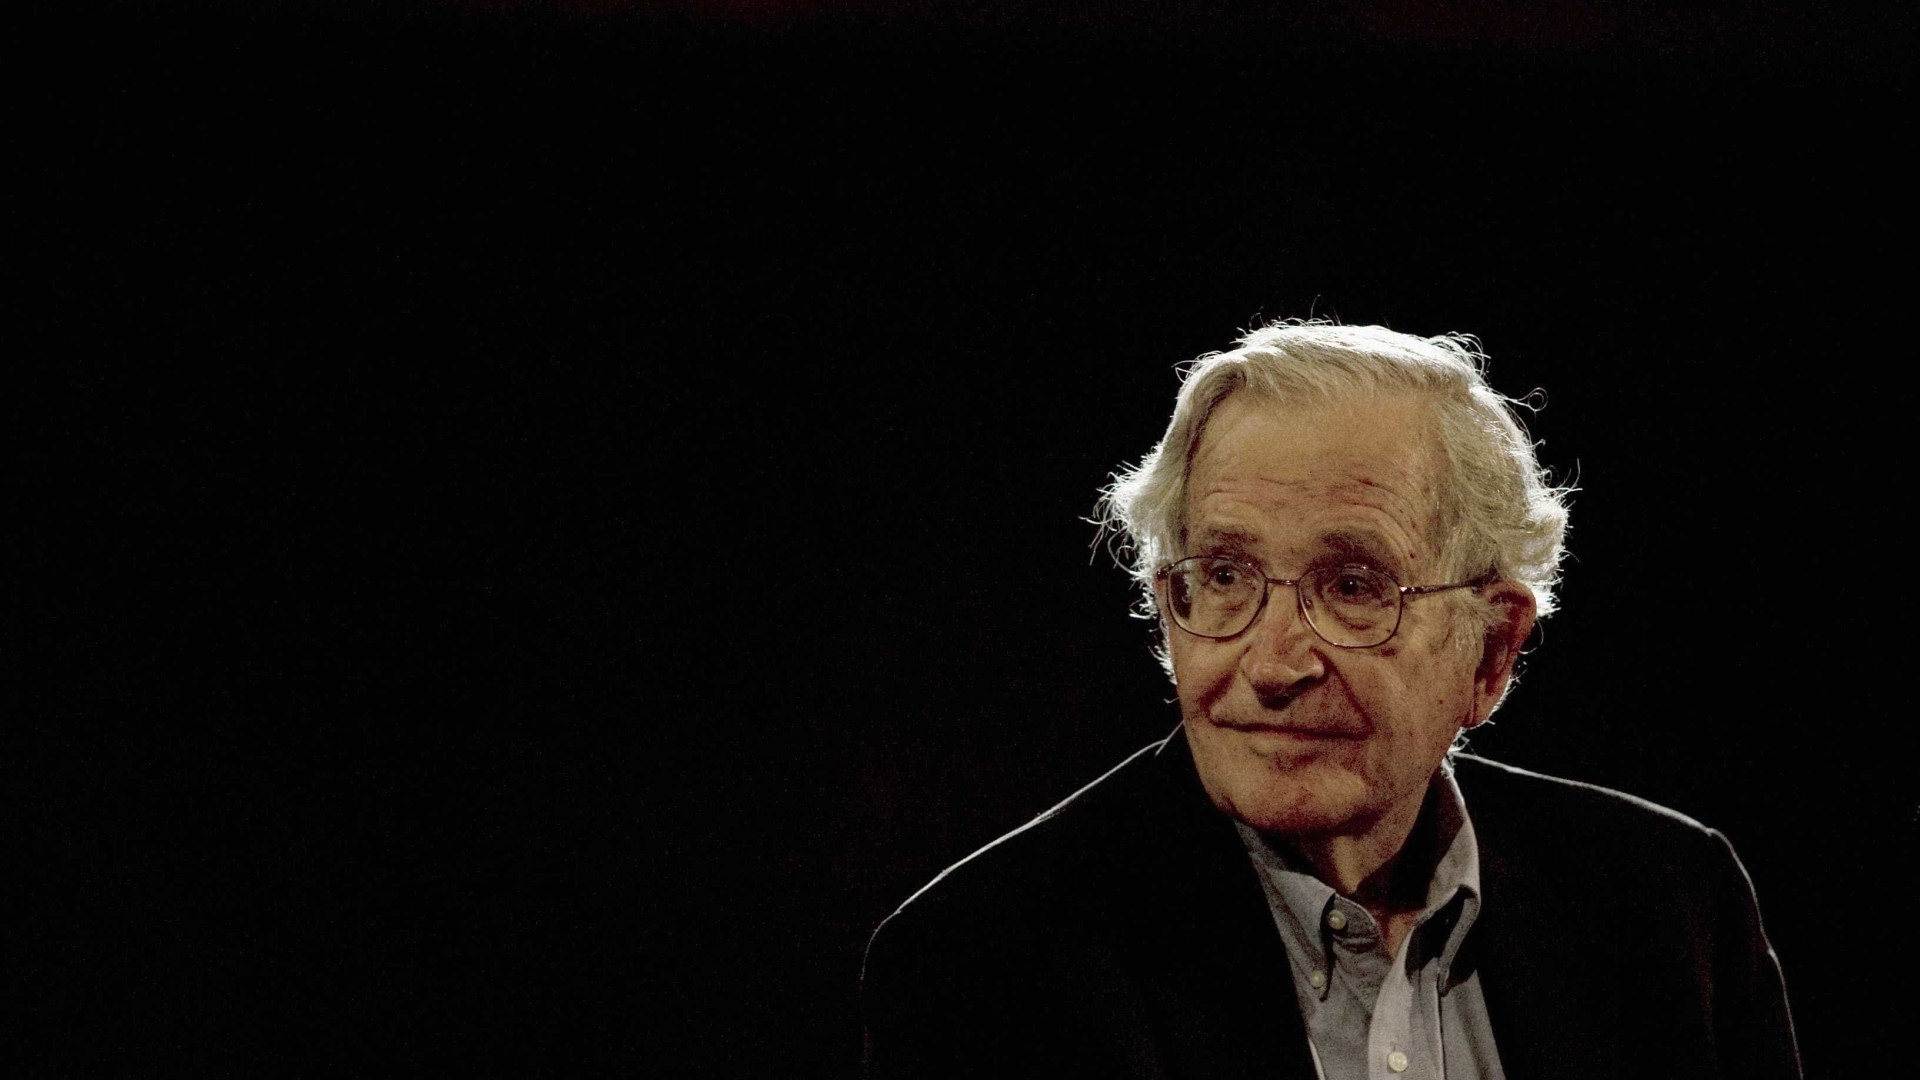 Linguista norte-americano Noam Chomsky grava vídeo em apoio a Lula